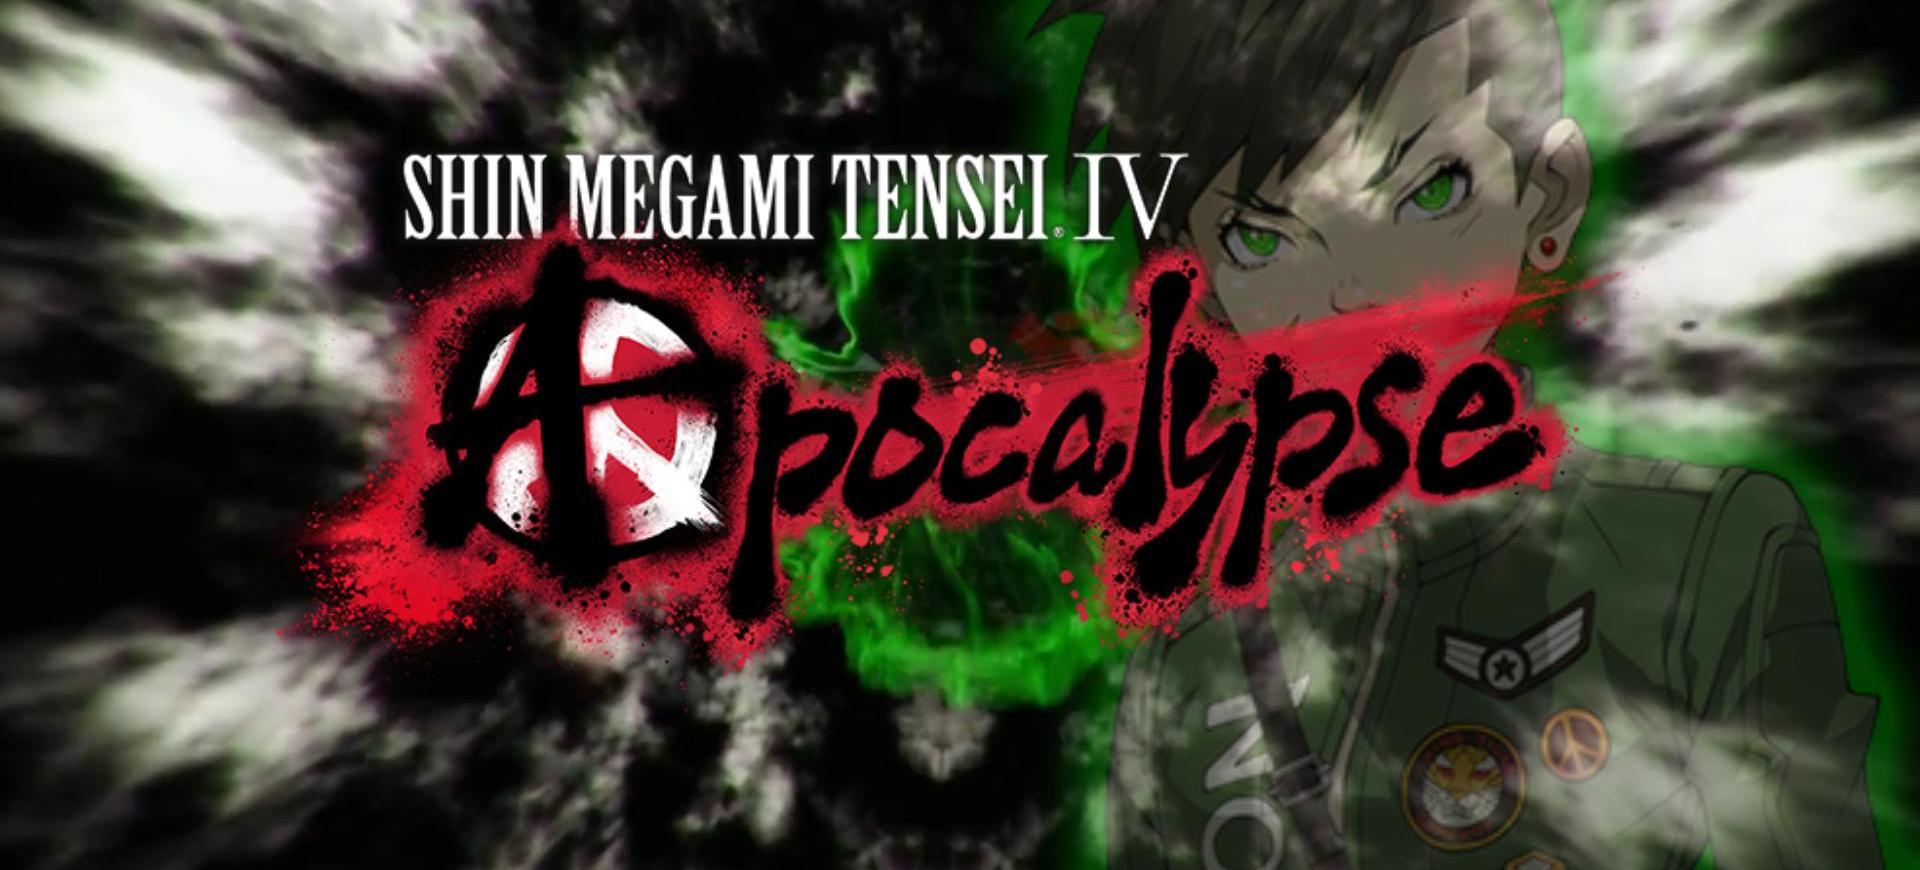 Shin Megami Tensei IV: Apocalypse tiết lộ thời gian phát hành chính thức - Tin Game